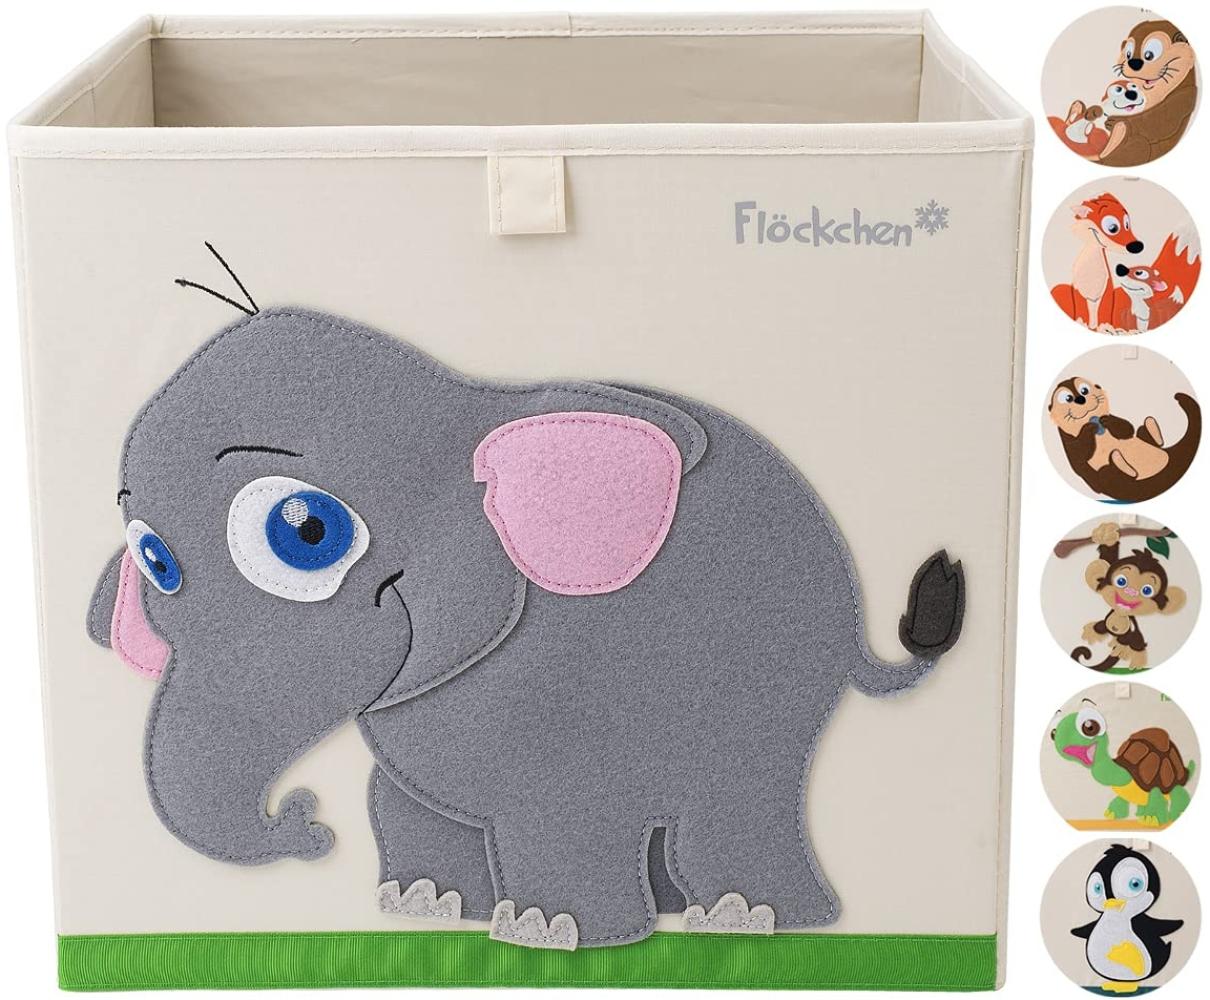 Flöckchen Kinder Aufbewahrungsbox, Spielzeugbox für Kinderzimmer I Spielzeug Box (33x33x33) passt ins Kallax Regal I Kinder Motiv Tiere (Emilia der Elefant) Bild 1